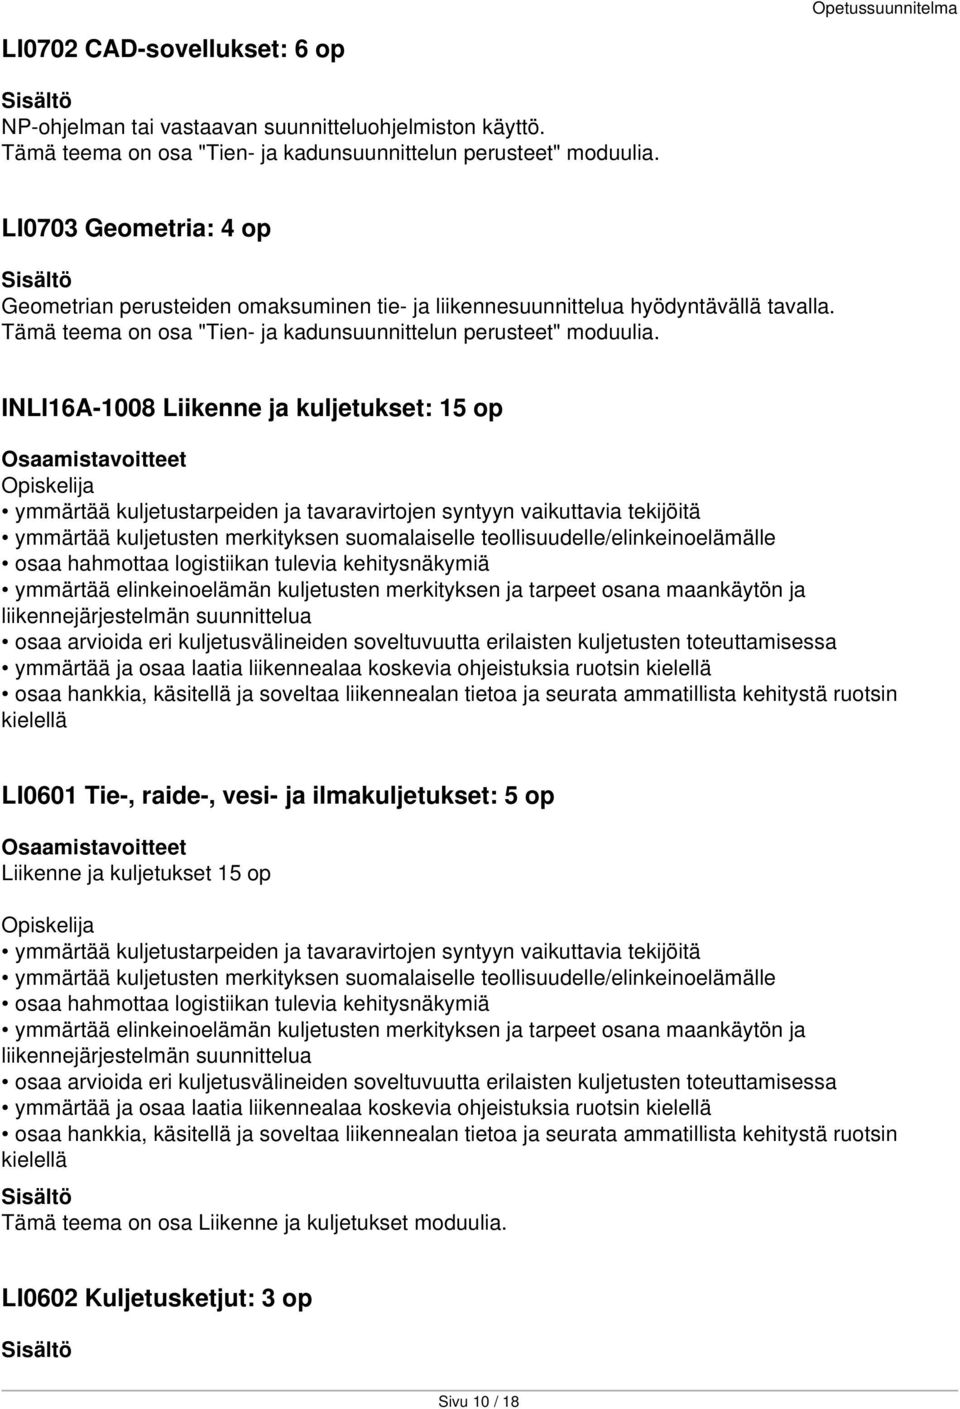 INLI16A-1008 Liikenne ja kuljetukset: 15 op ymmärtää kuljetustarpeiden ja tavaravirtojen syntyyn vaikuttavia tekijöitä ymmärtää kuljetusten merkityksen suomalaiselle teollisuudelle/elinkeinoelämälle